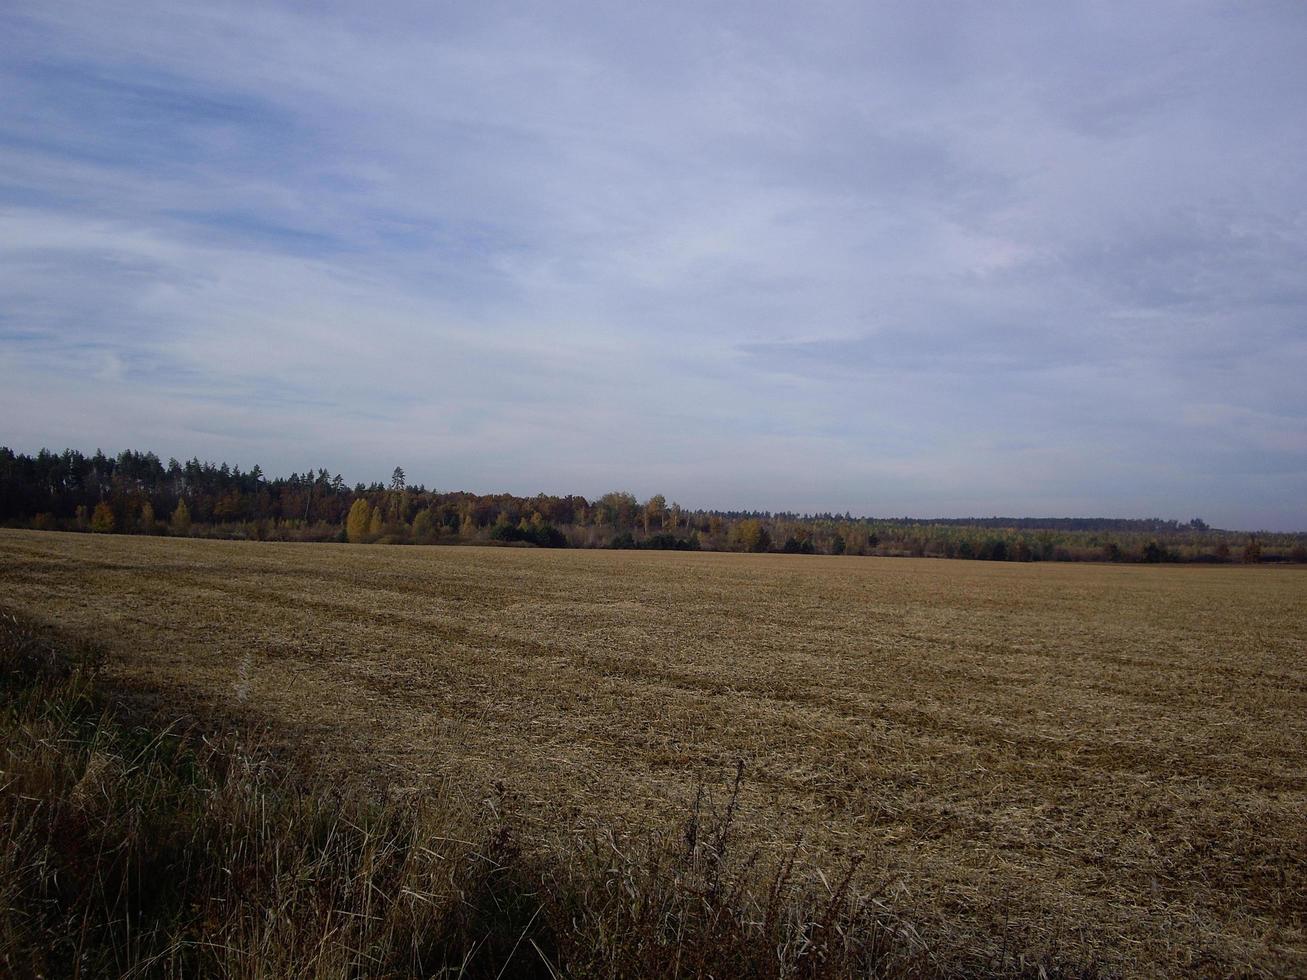 panorama d'un champ de fin d'automne photo